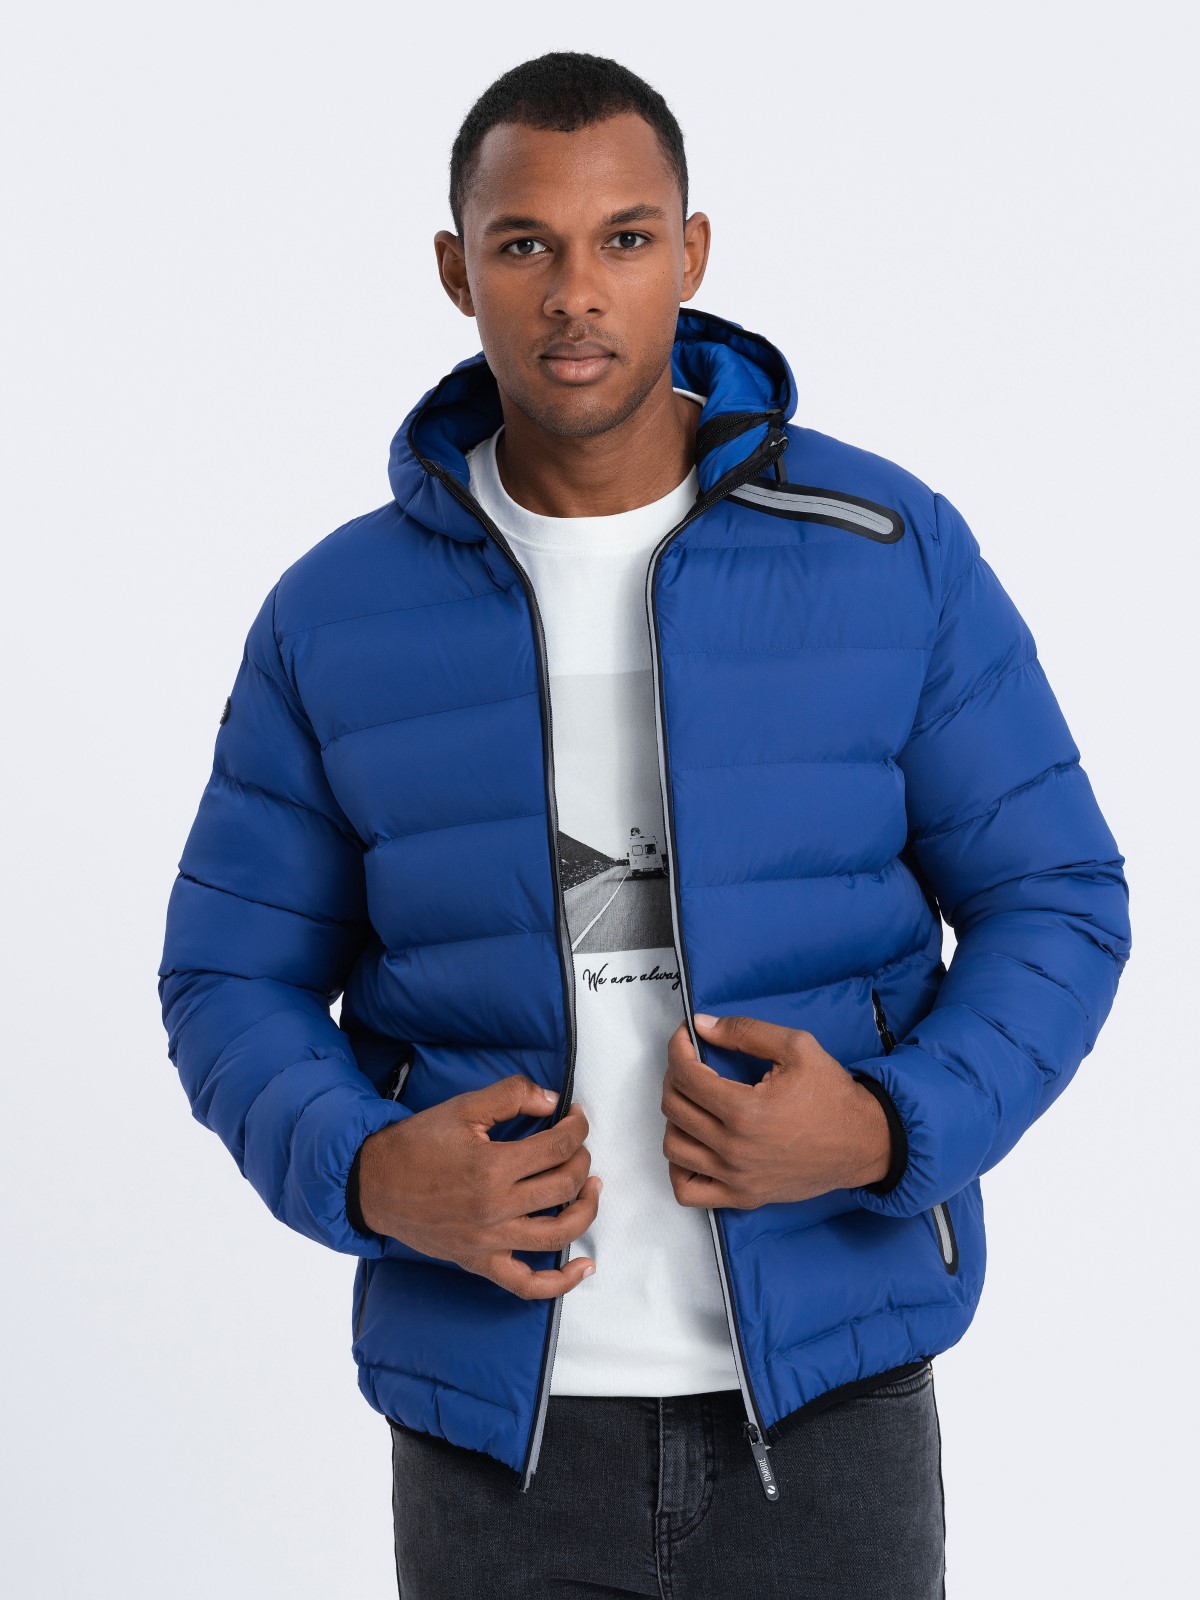 Men's winter quilted jacket - indigo C451 | Ombre.com - Men's